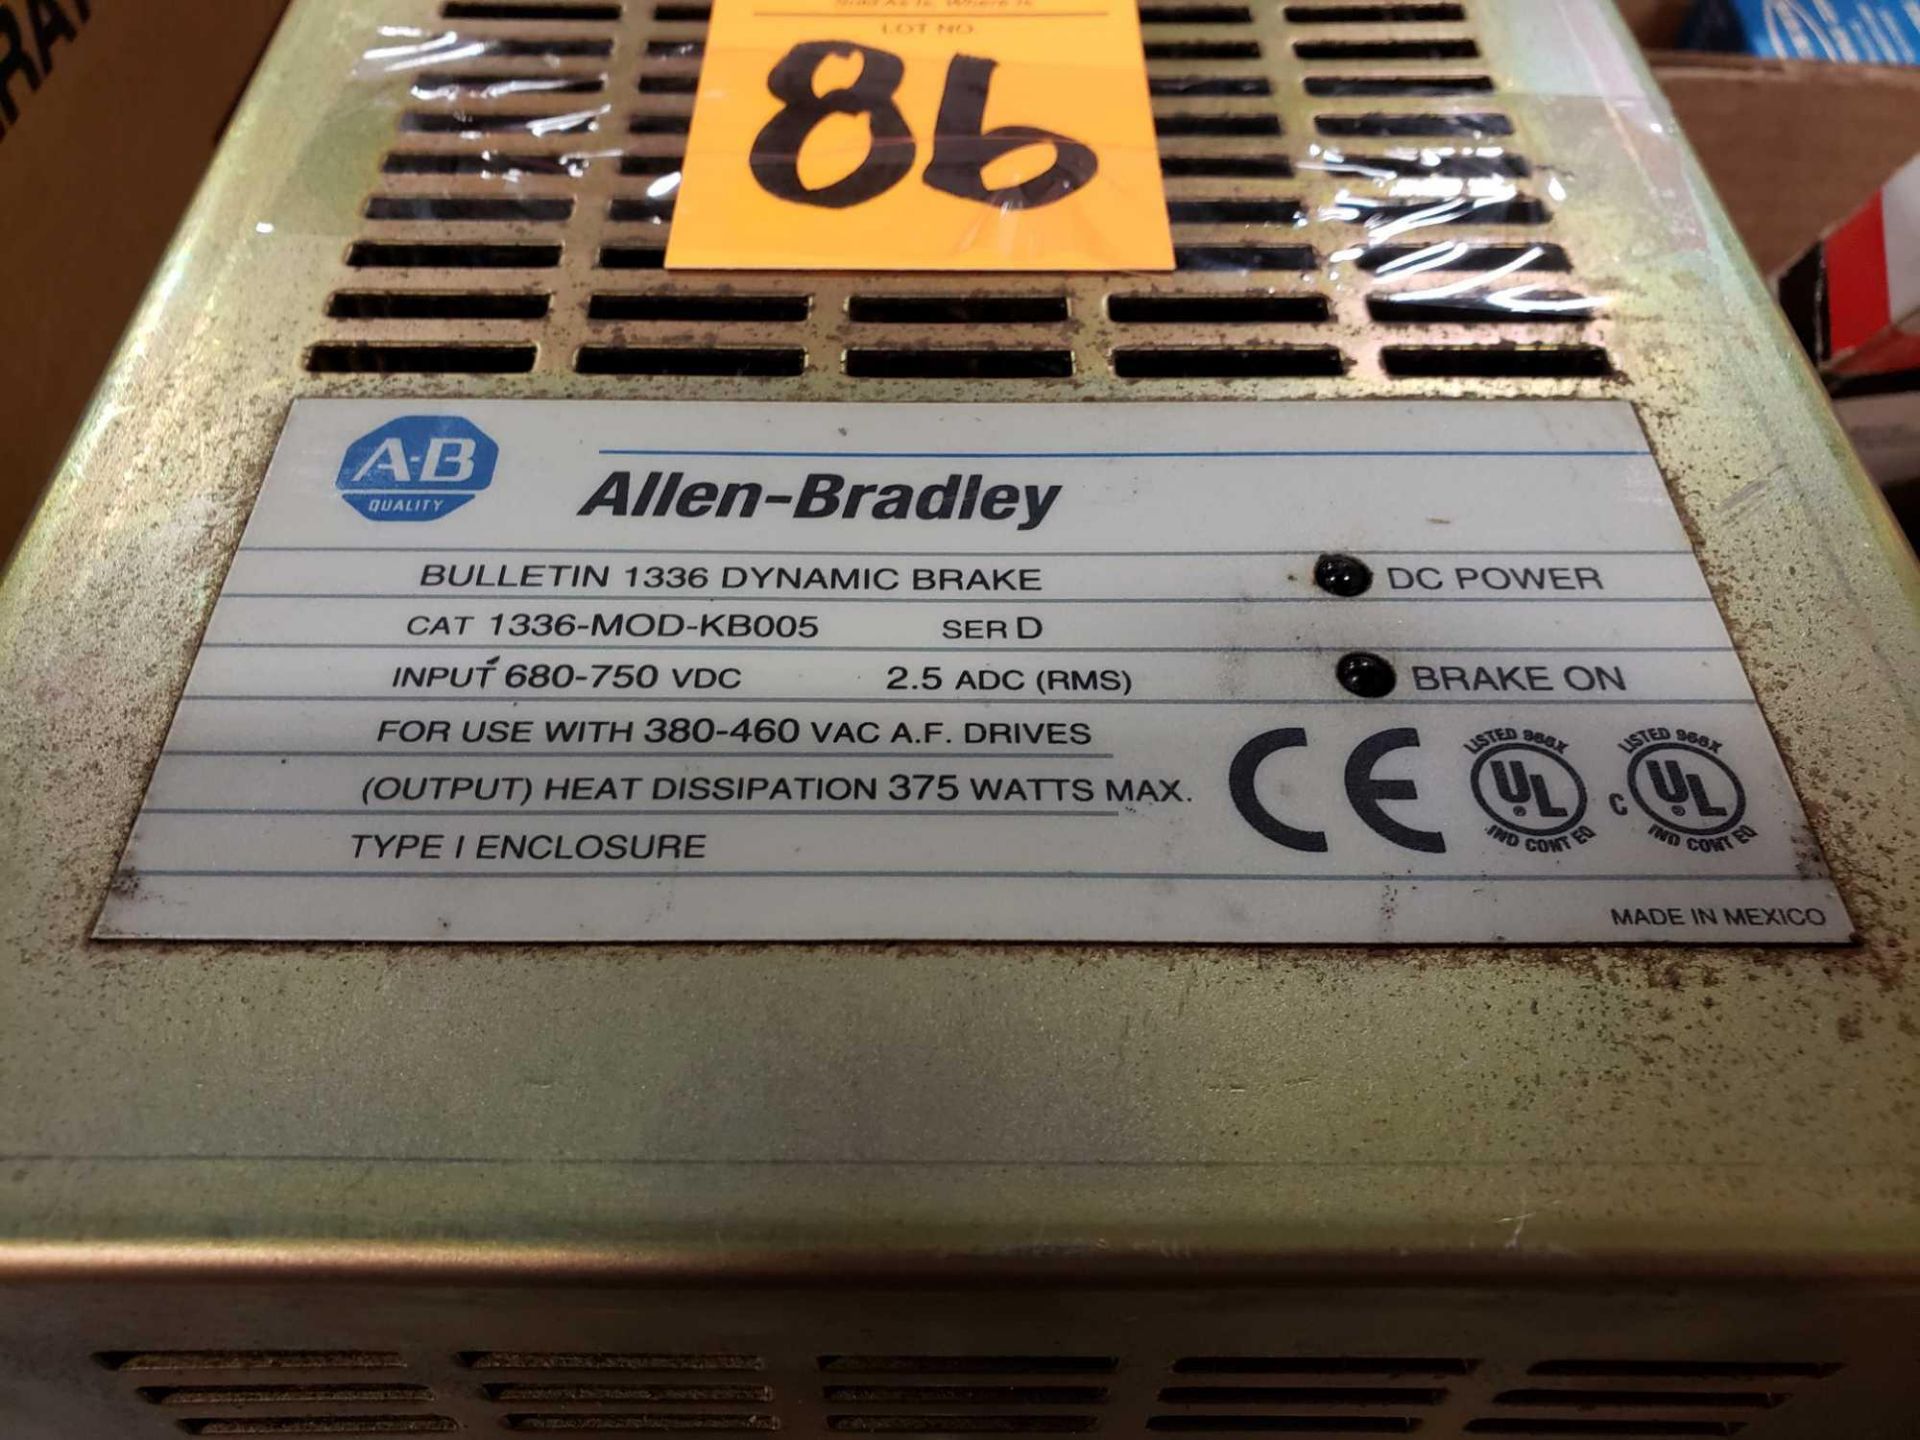 Allen Bradley dynamic brake catalog number 1336-MOD-KB005. - Image 2 of 2